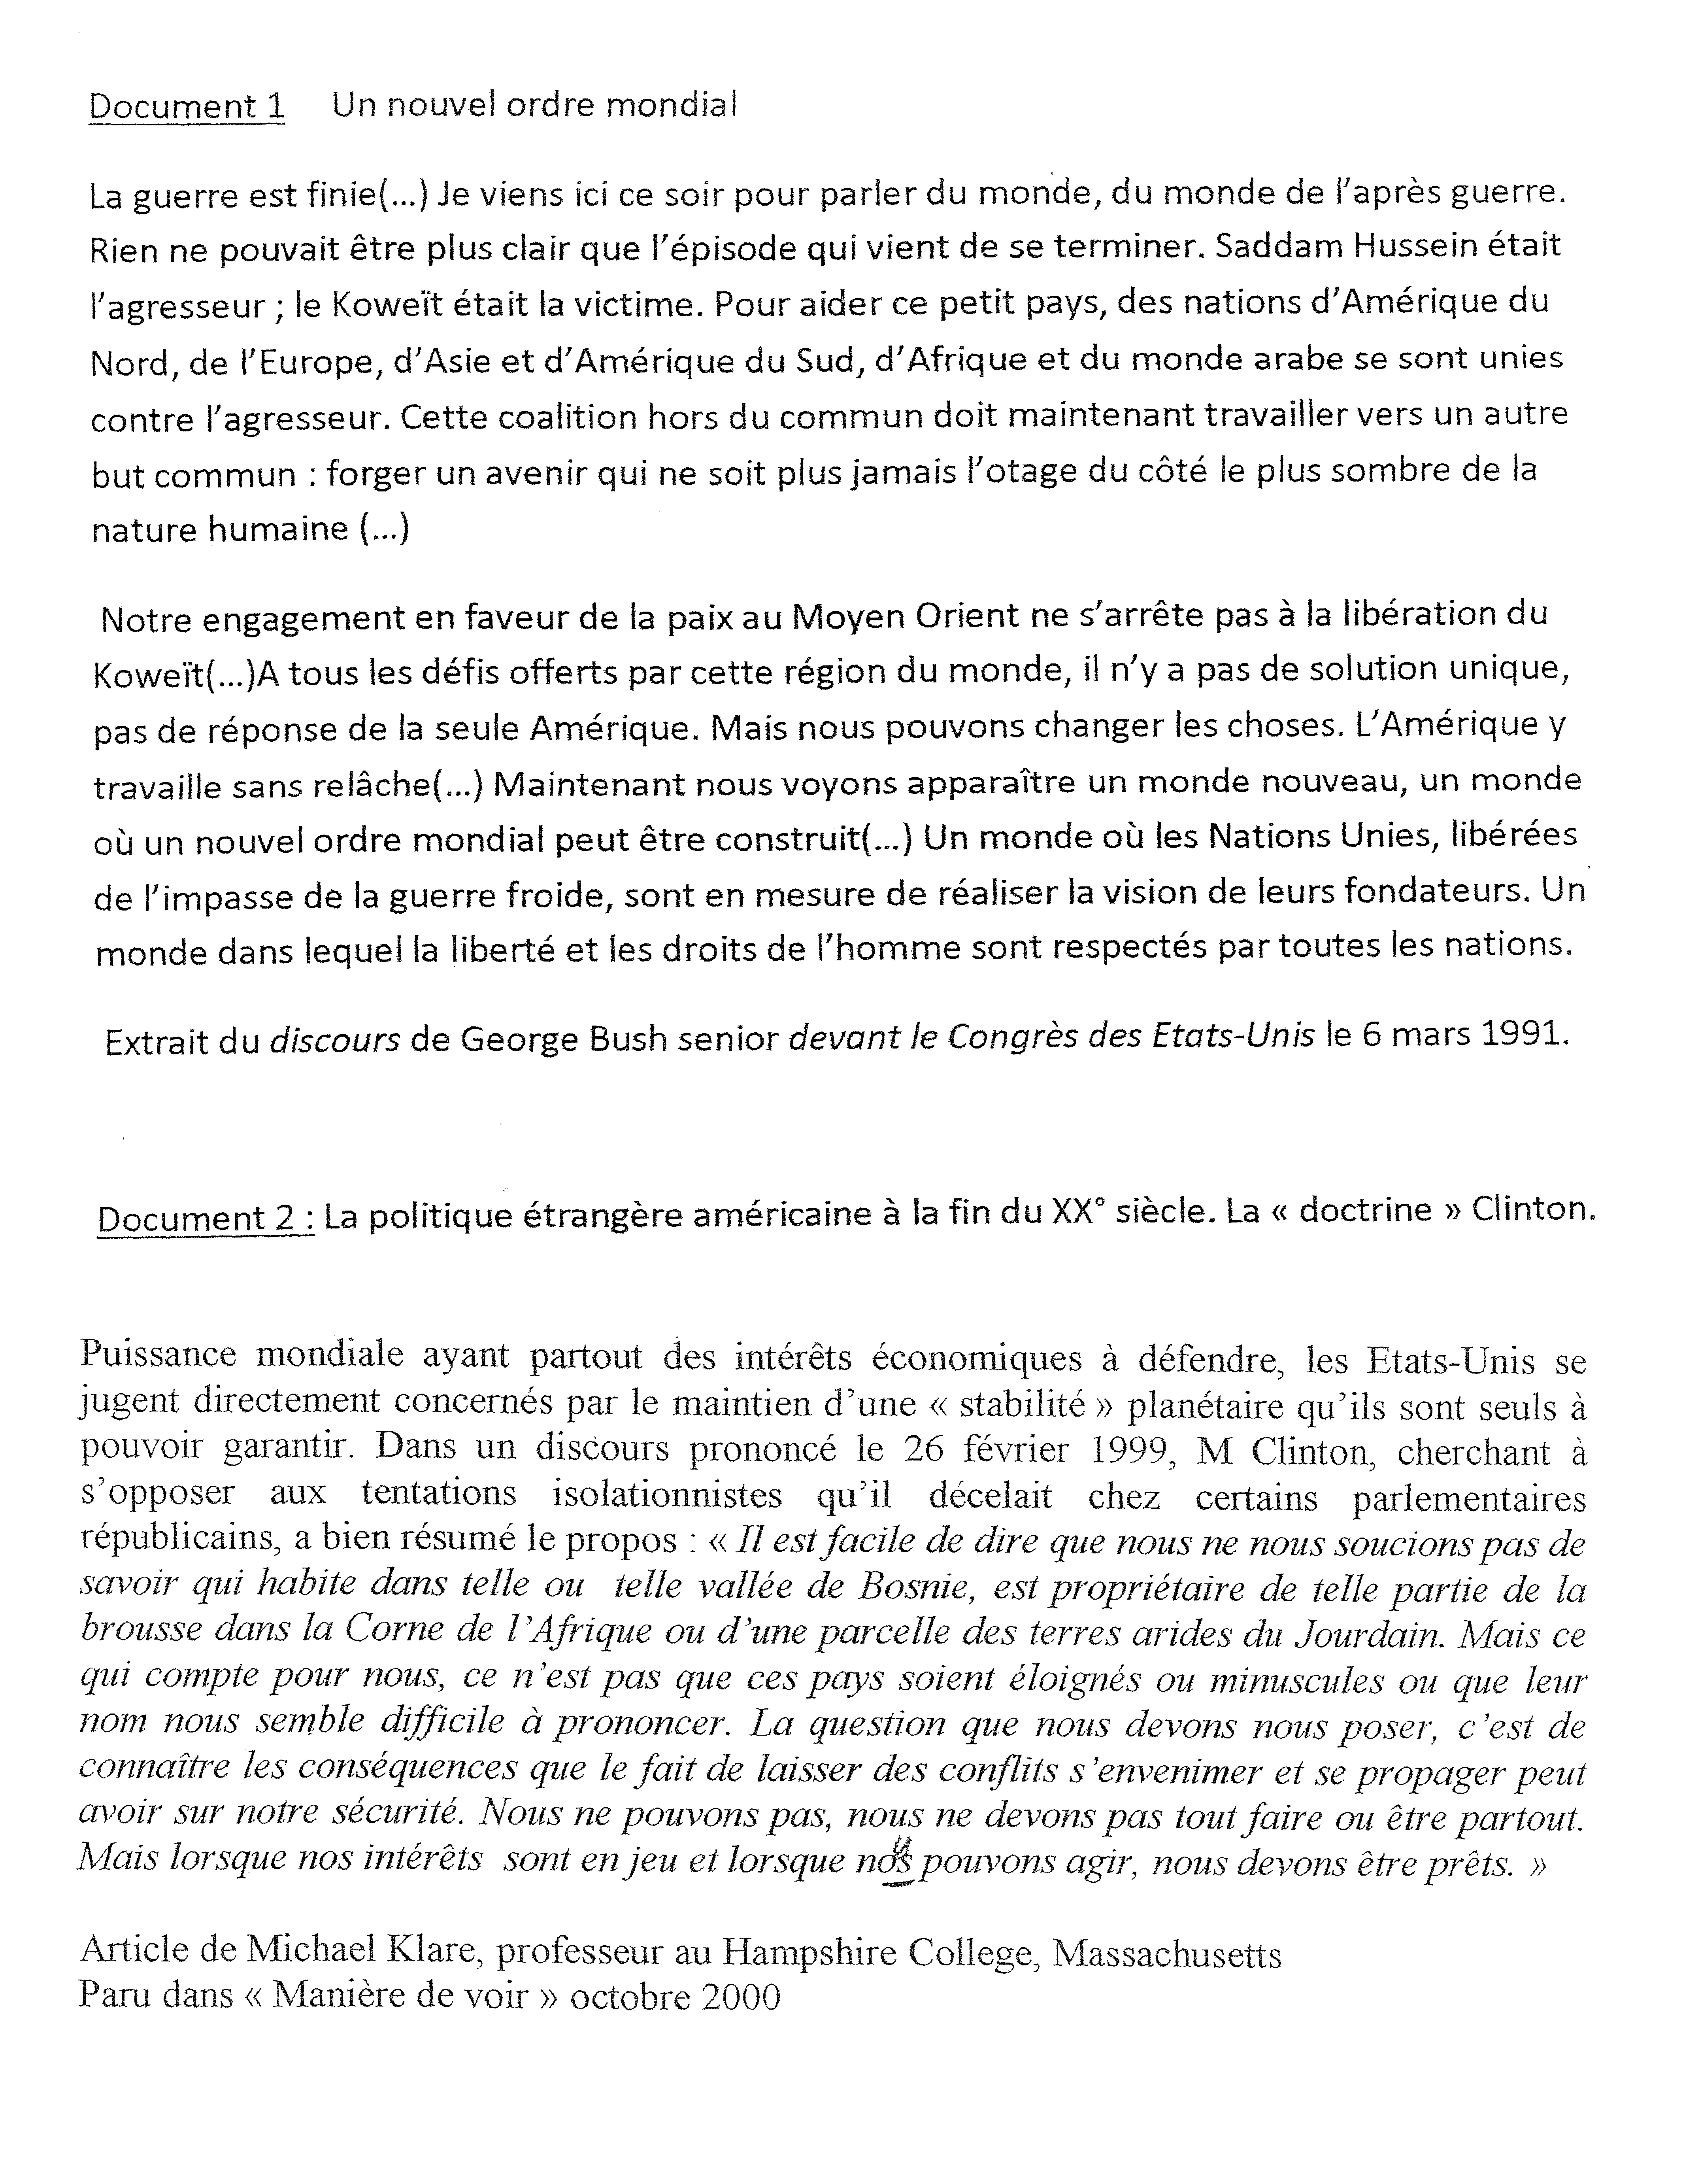 Exposé Sur la Guerre Froide - Dissertation - Léa Jacquiot